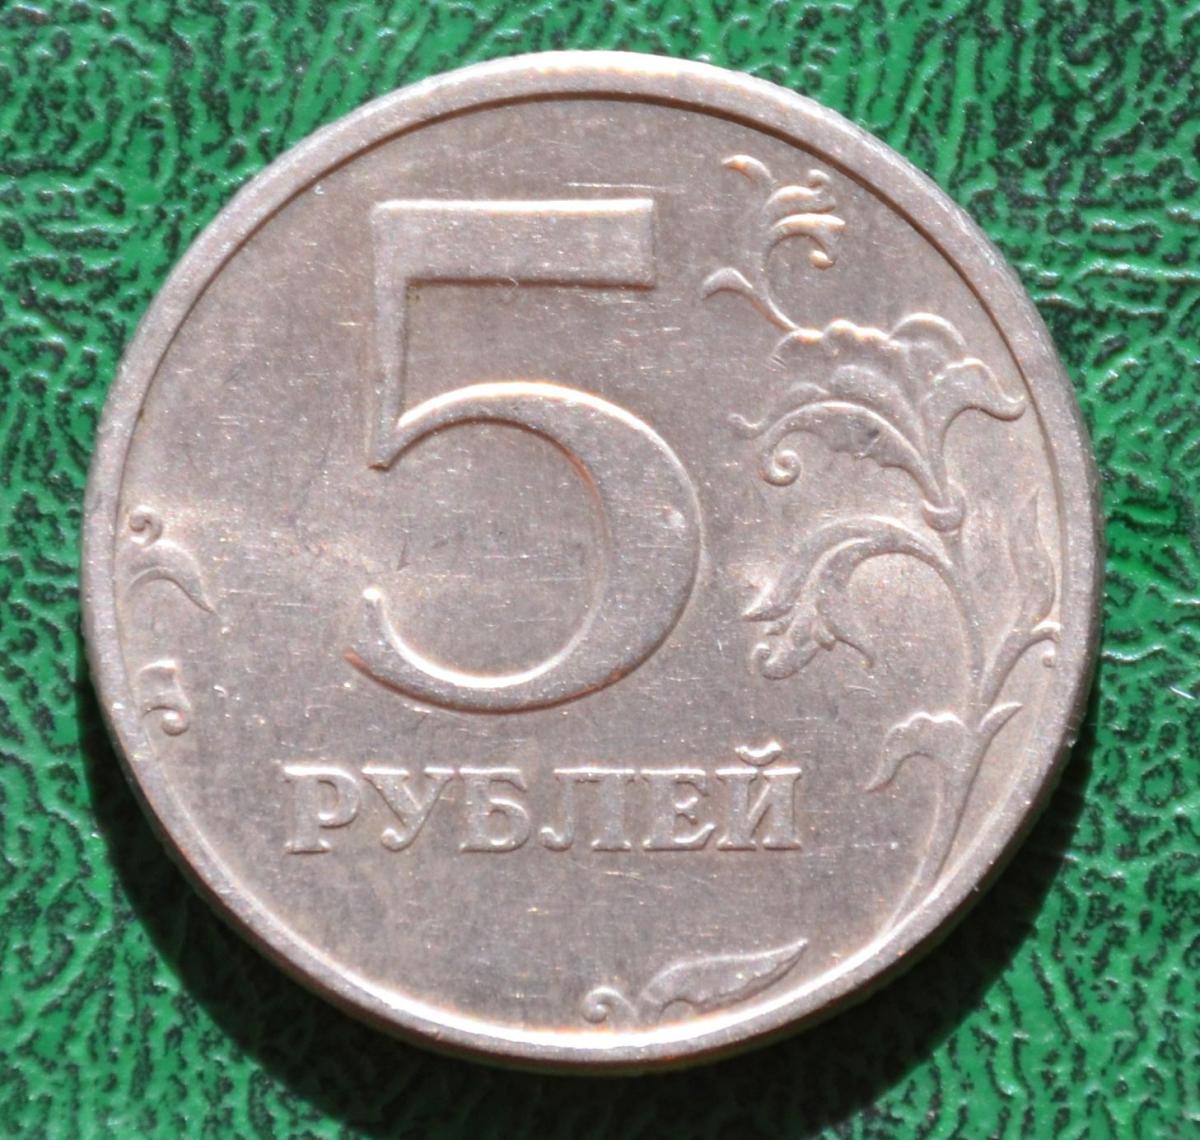 5 рублей 1998 г. СПМД 